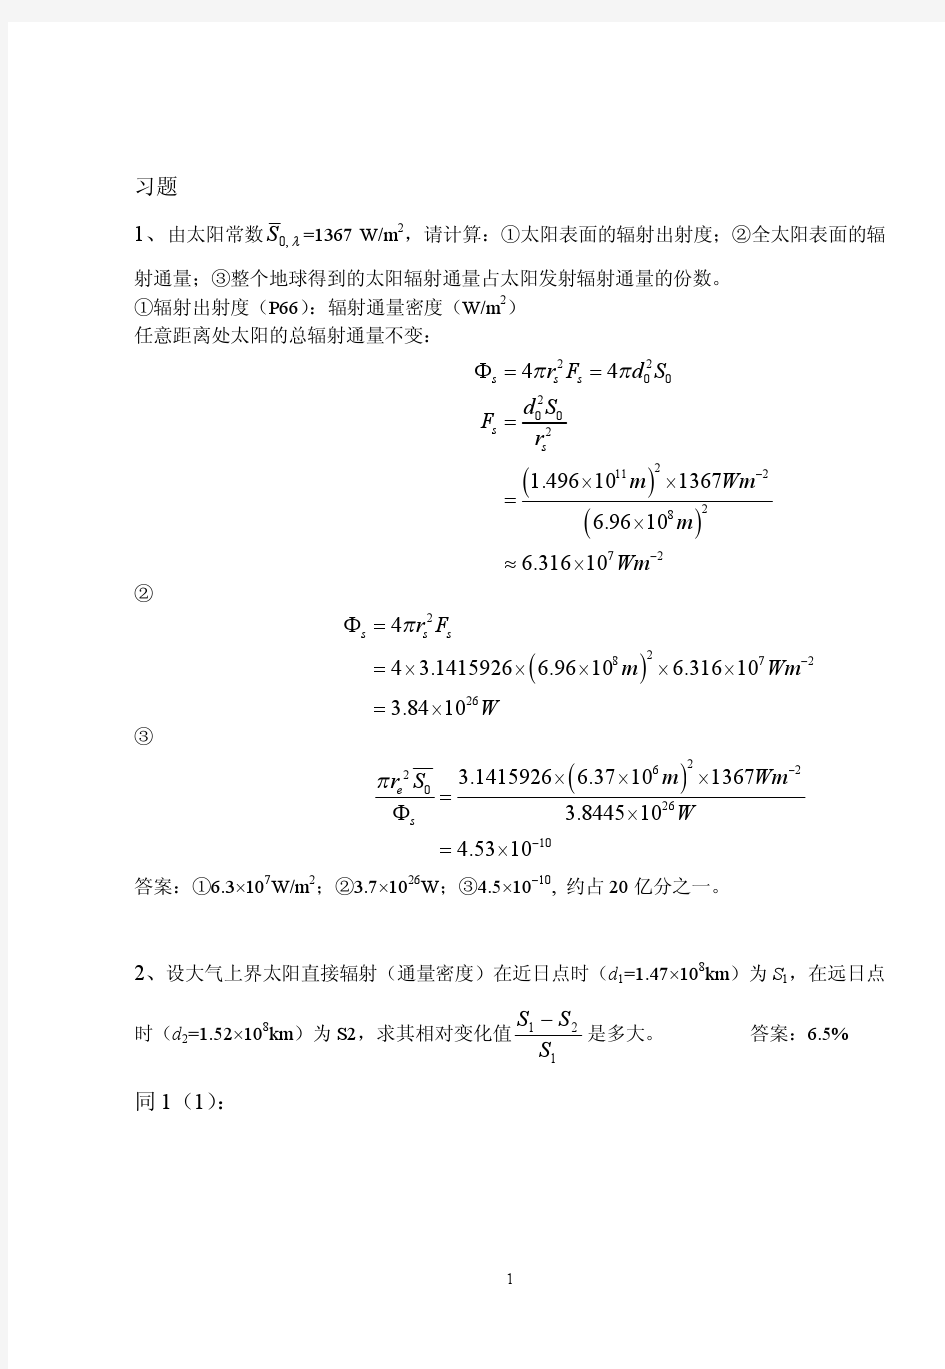 大气物理辐射课后习题(北京大学大气物理学)